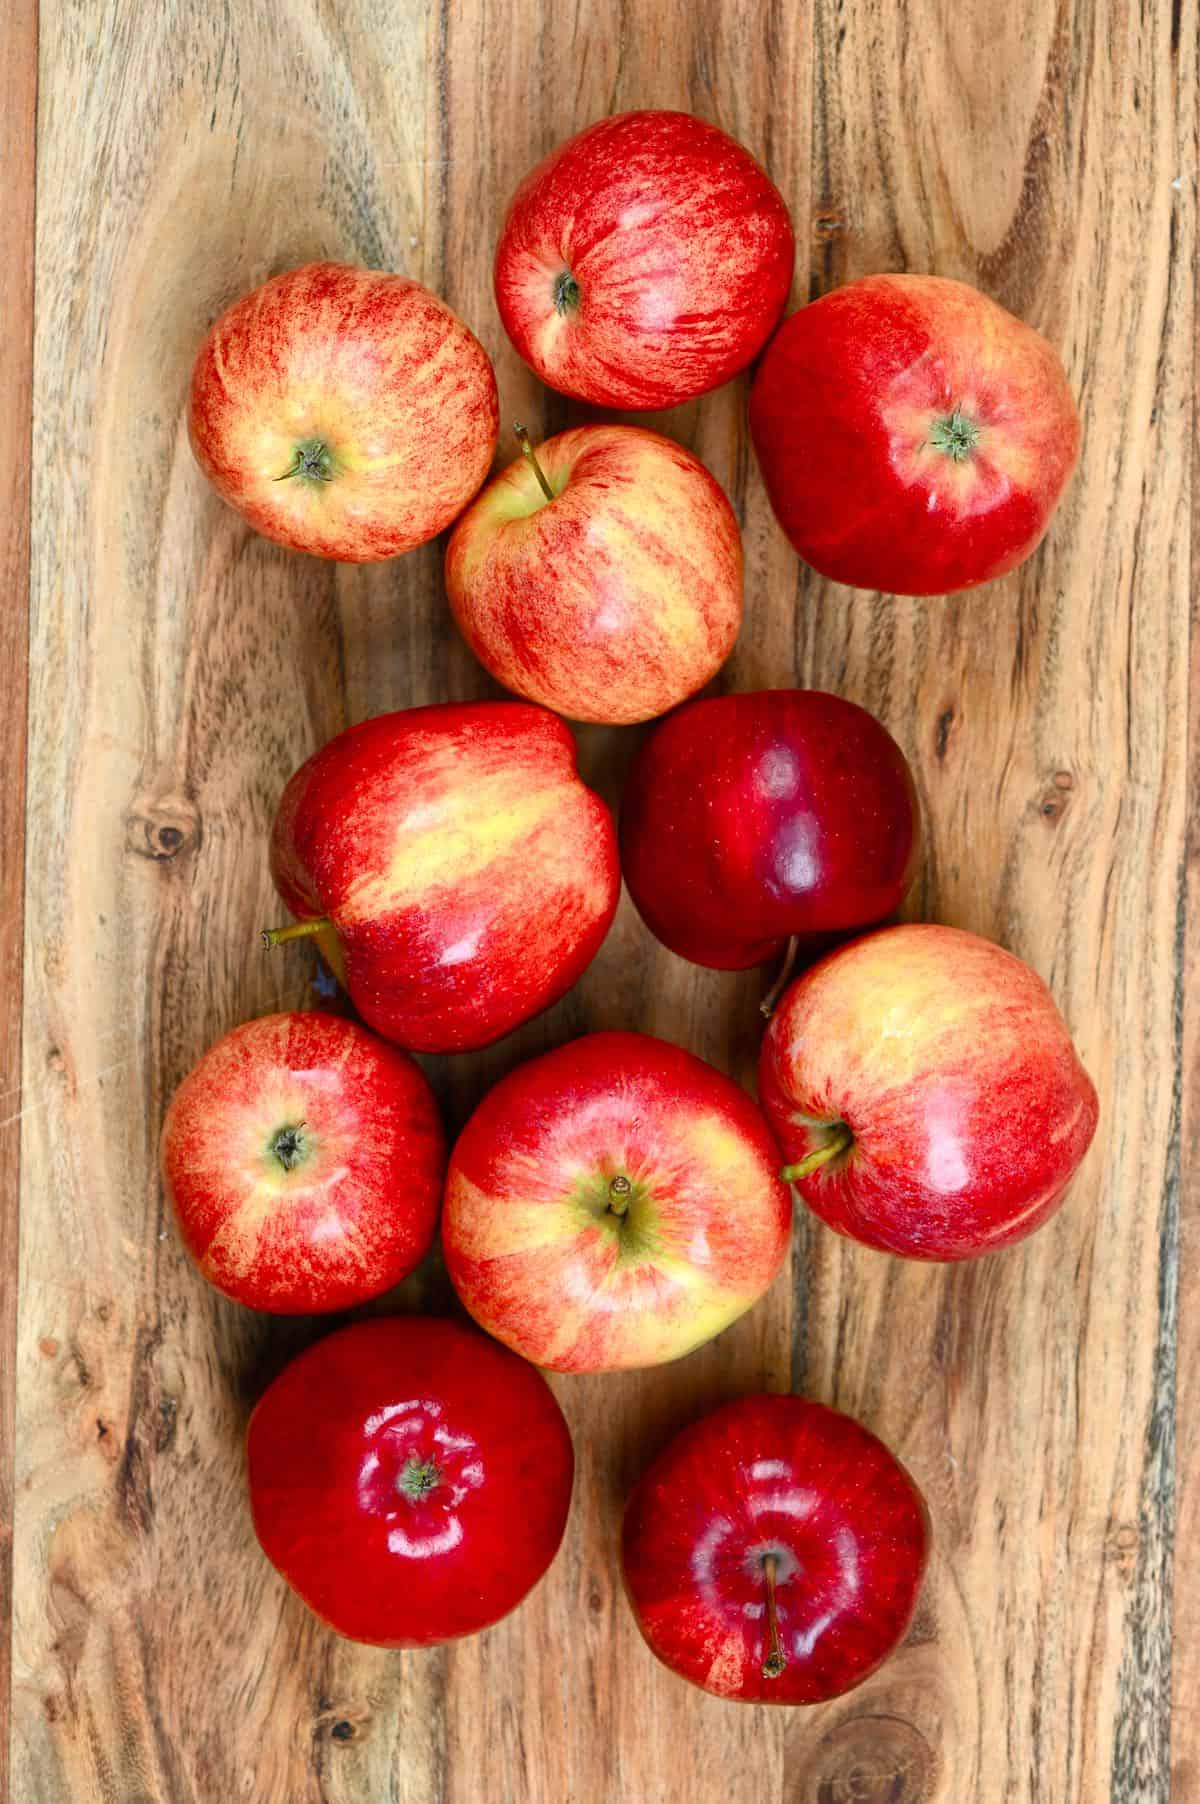 A few apples on a wooden board